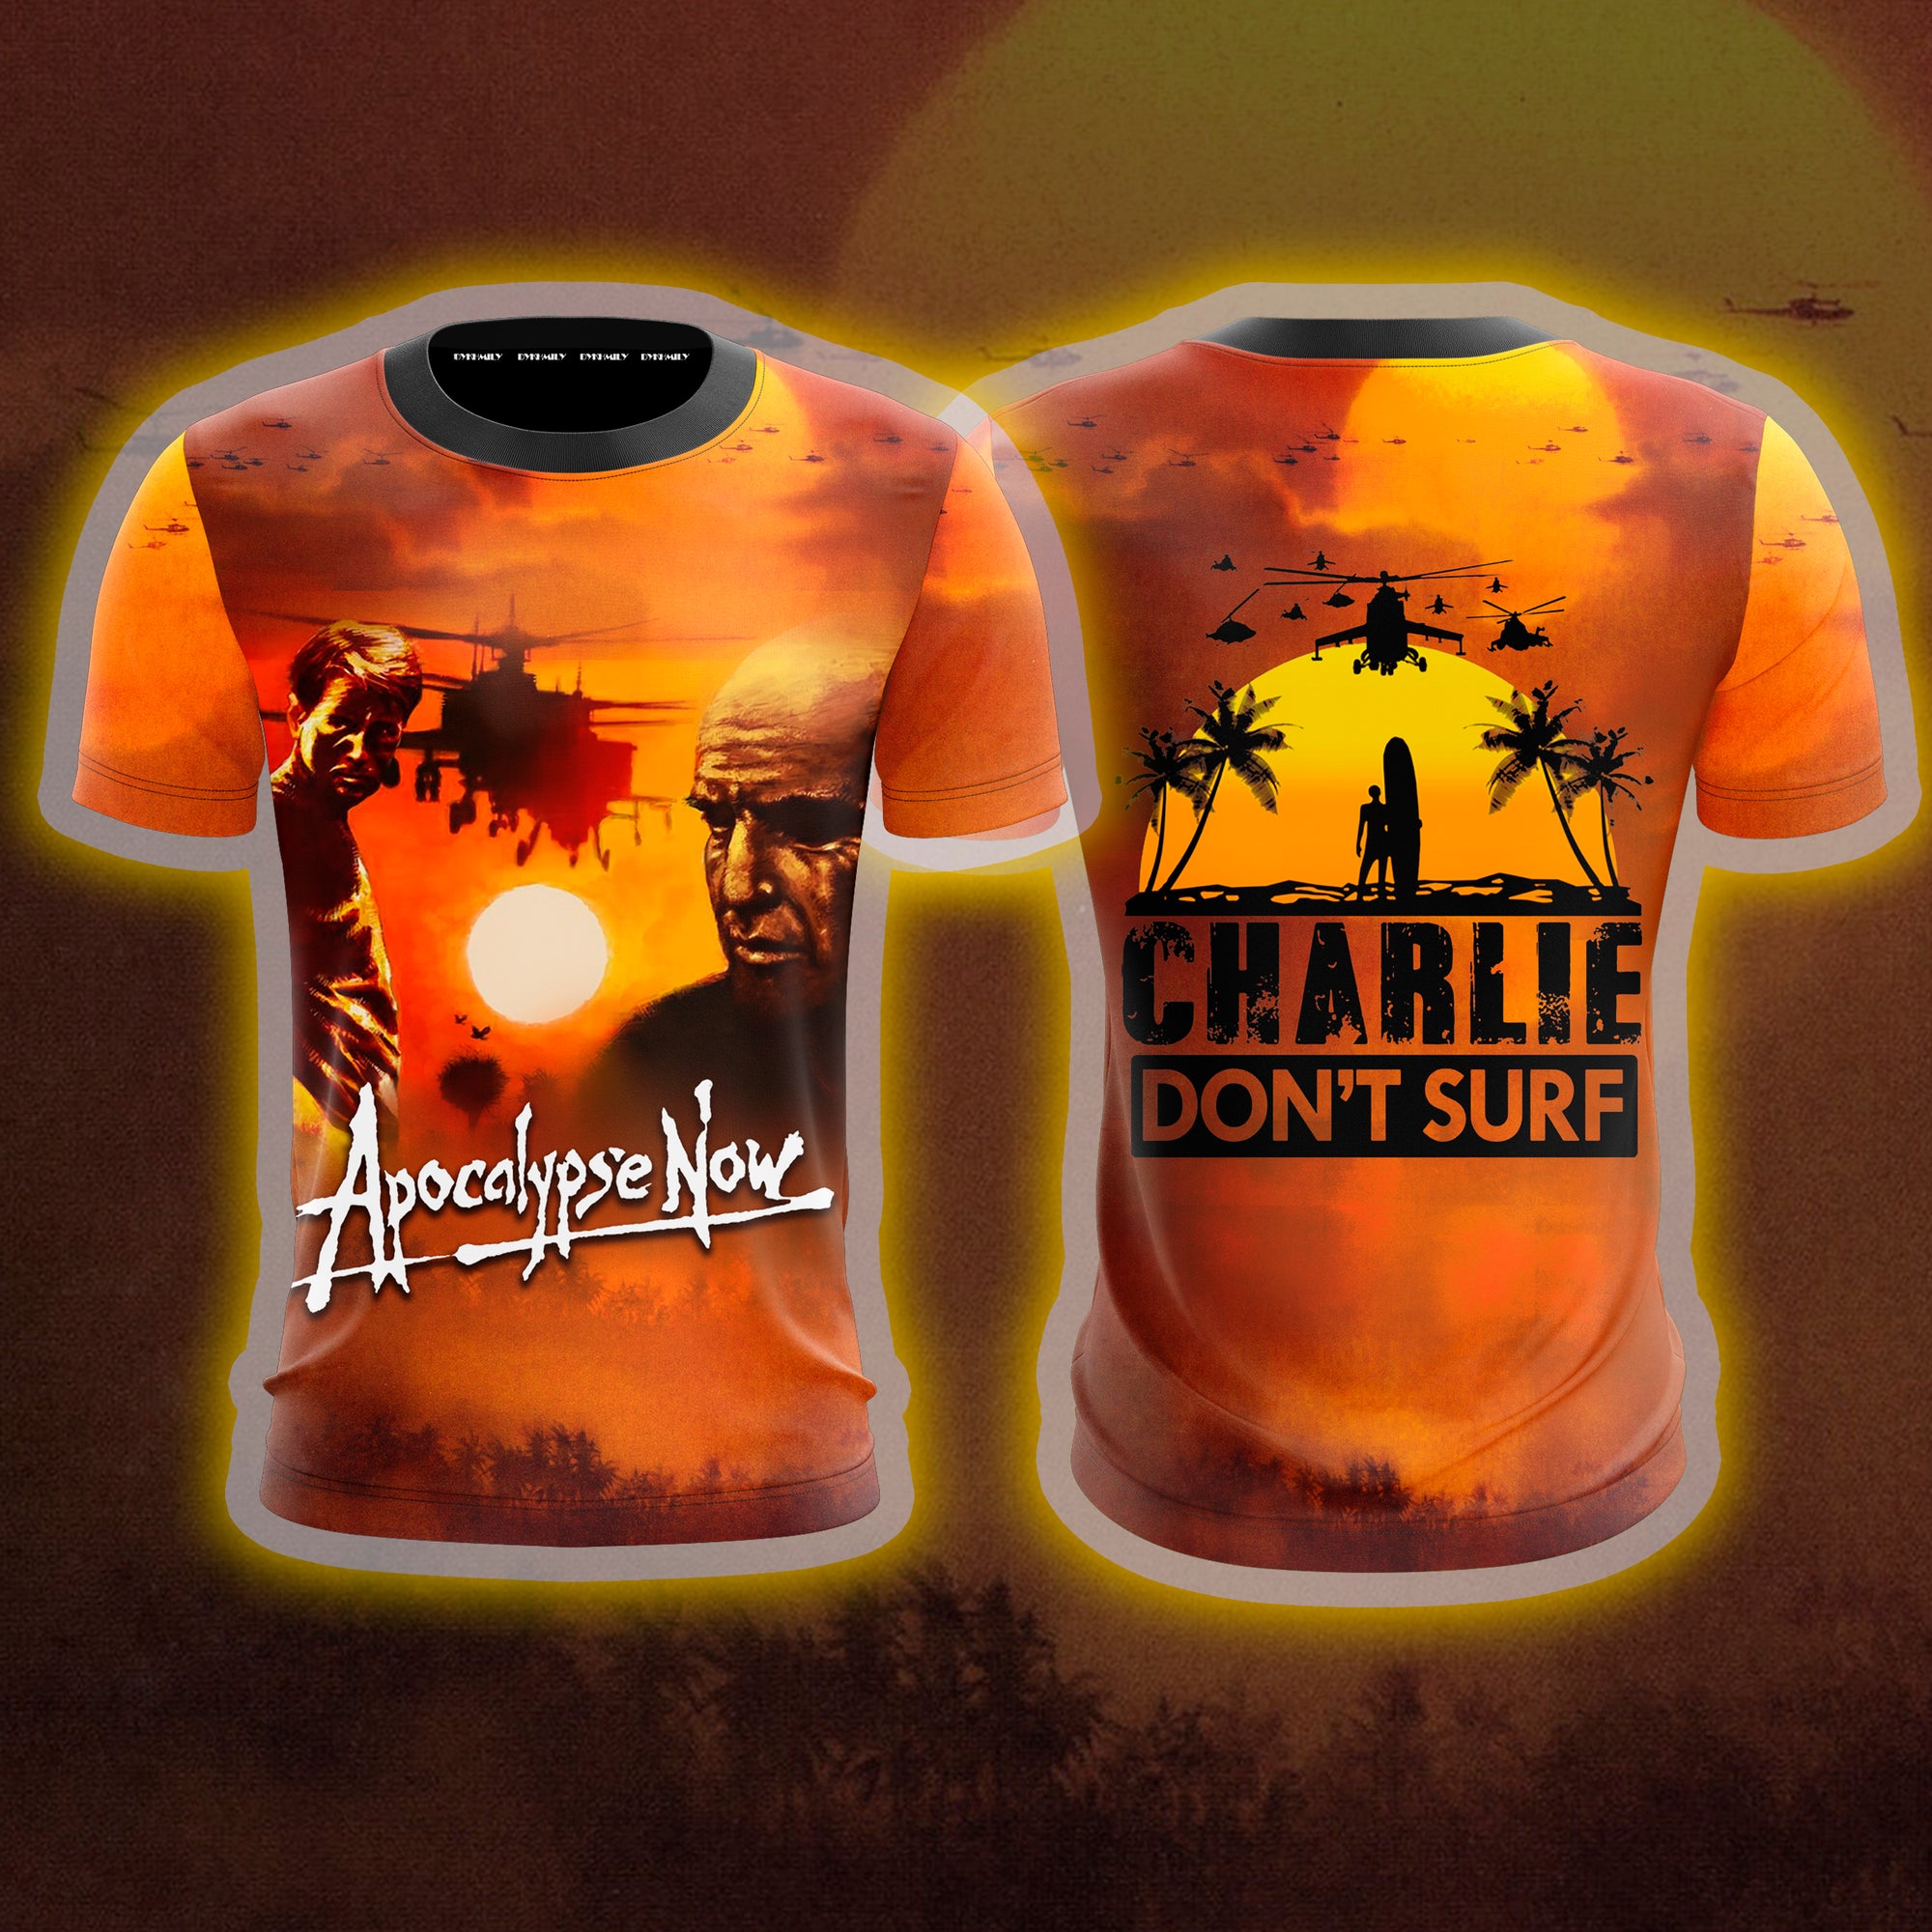 Apocalypse Now Unisex 3D T-shirt